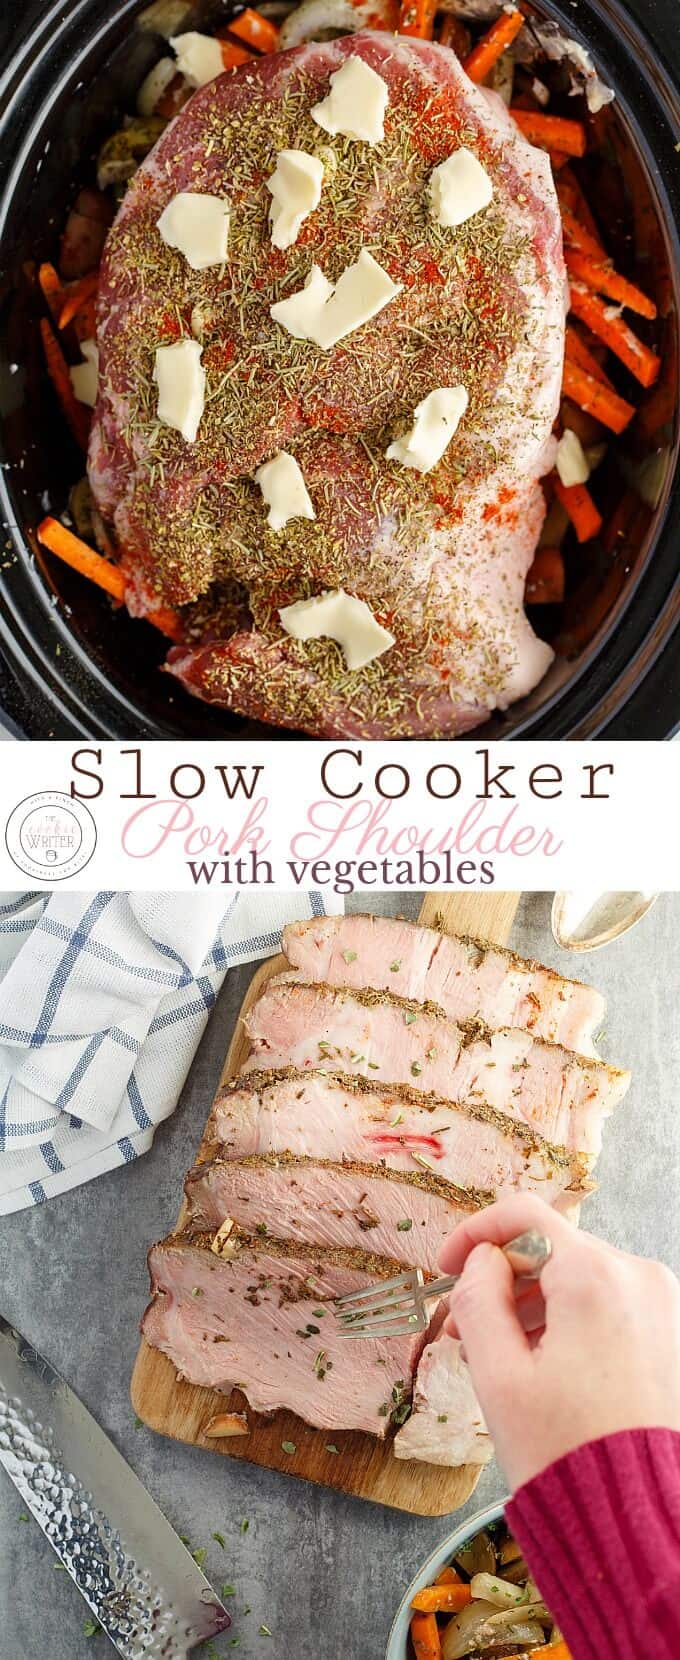 Pork Shoulder with Vegetables in the Slow Cooker